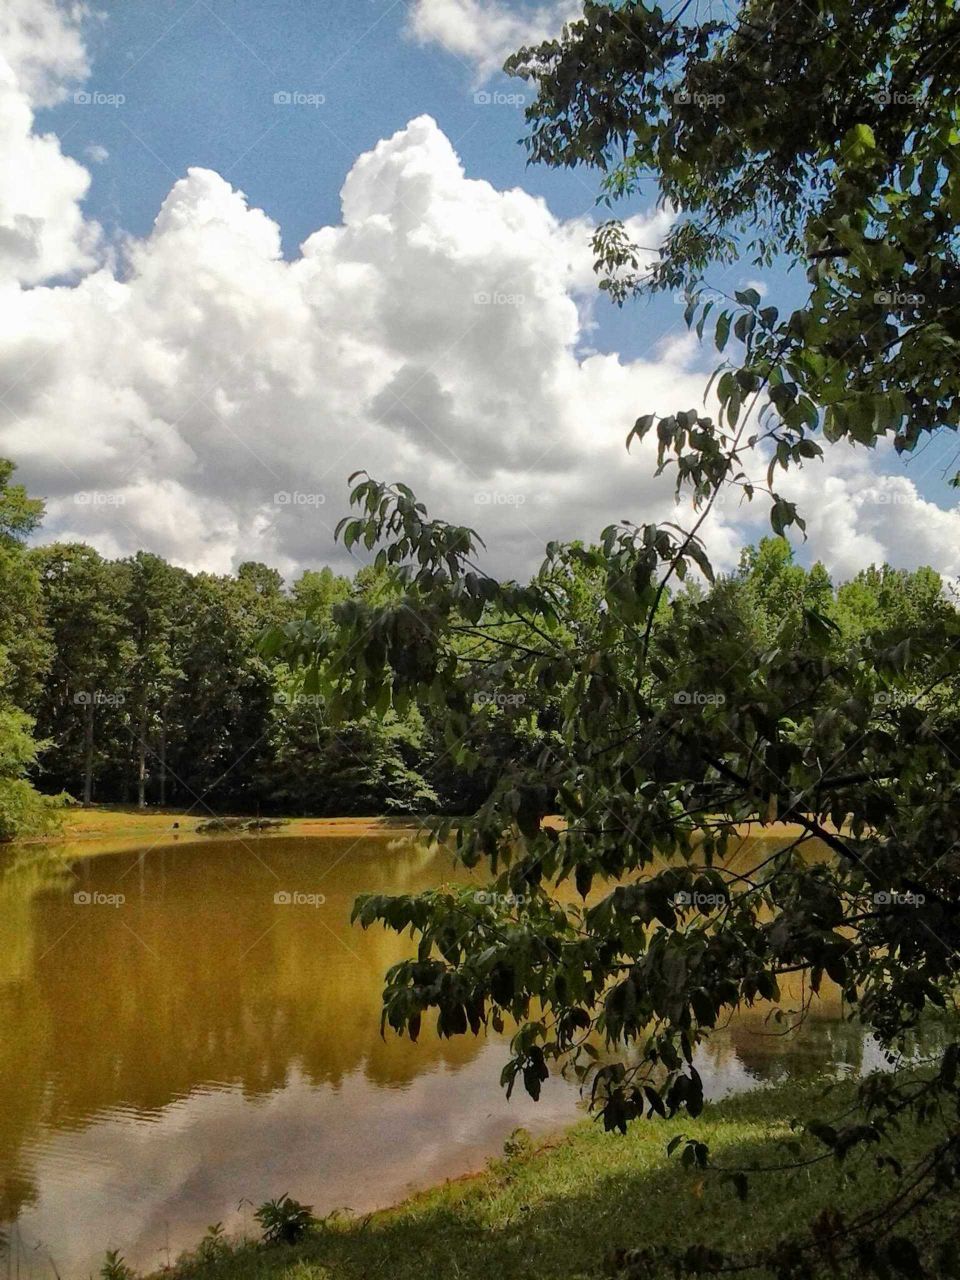 Murky pond